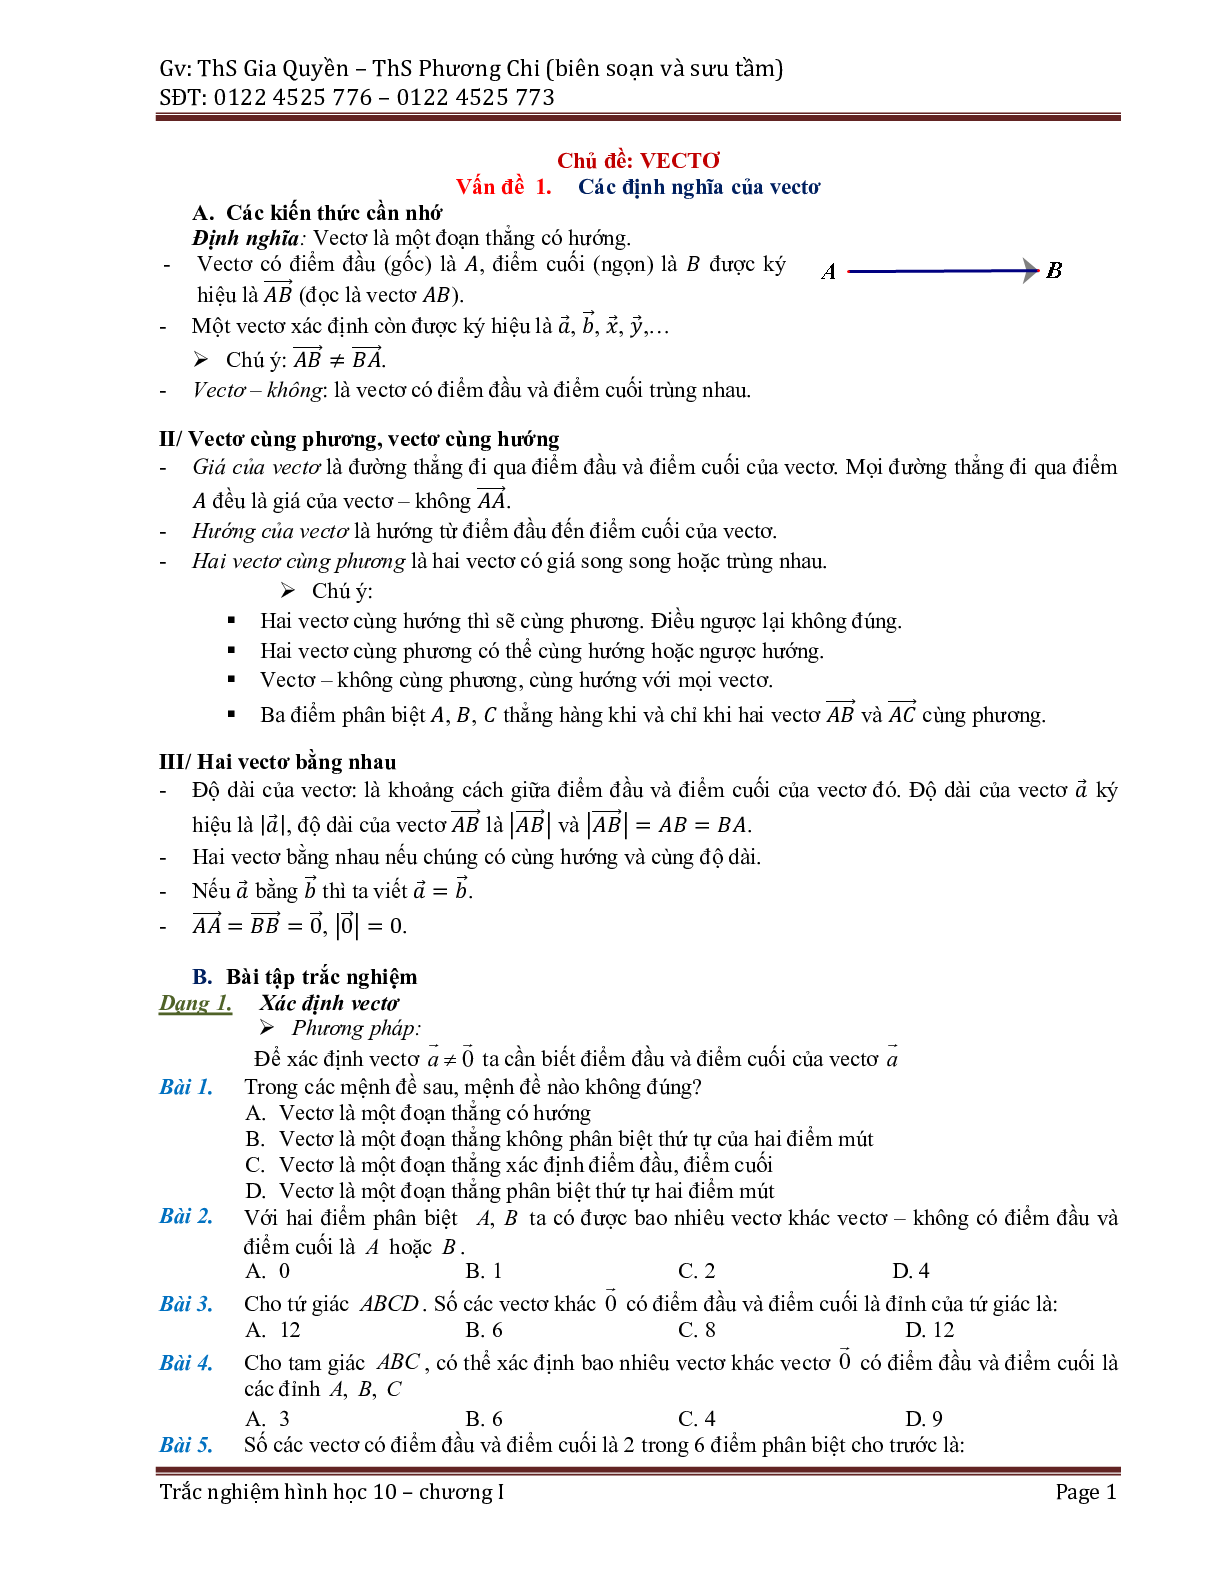 Phân dạng và bài tập trắc nghiệm chuyên đề vector (trang 1)